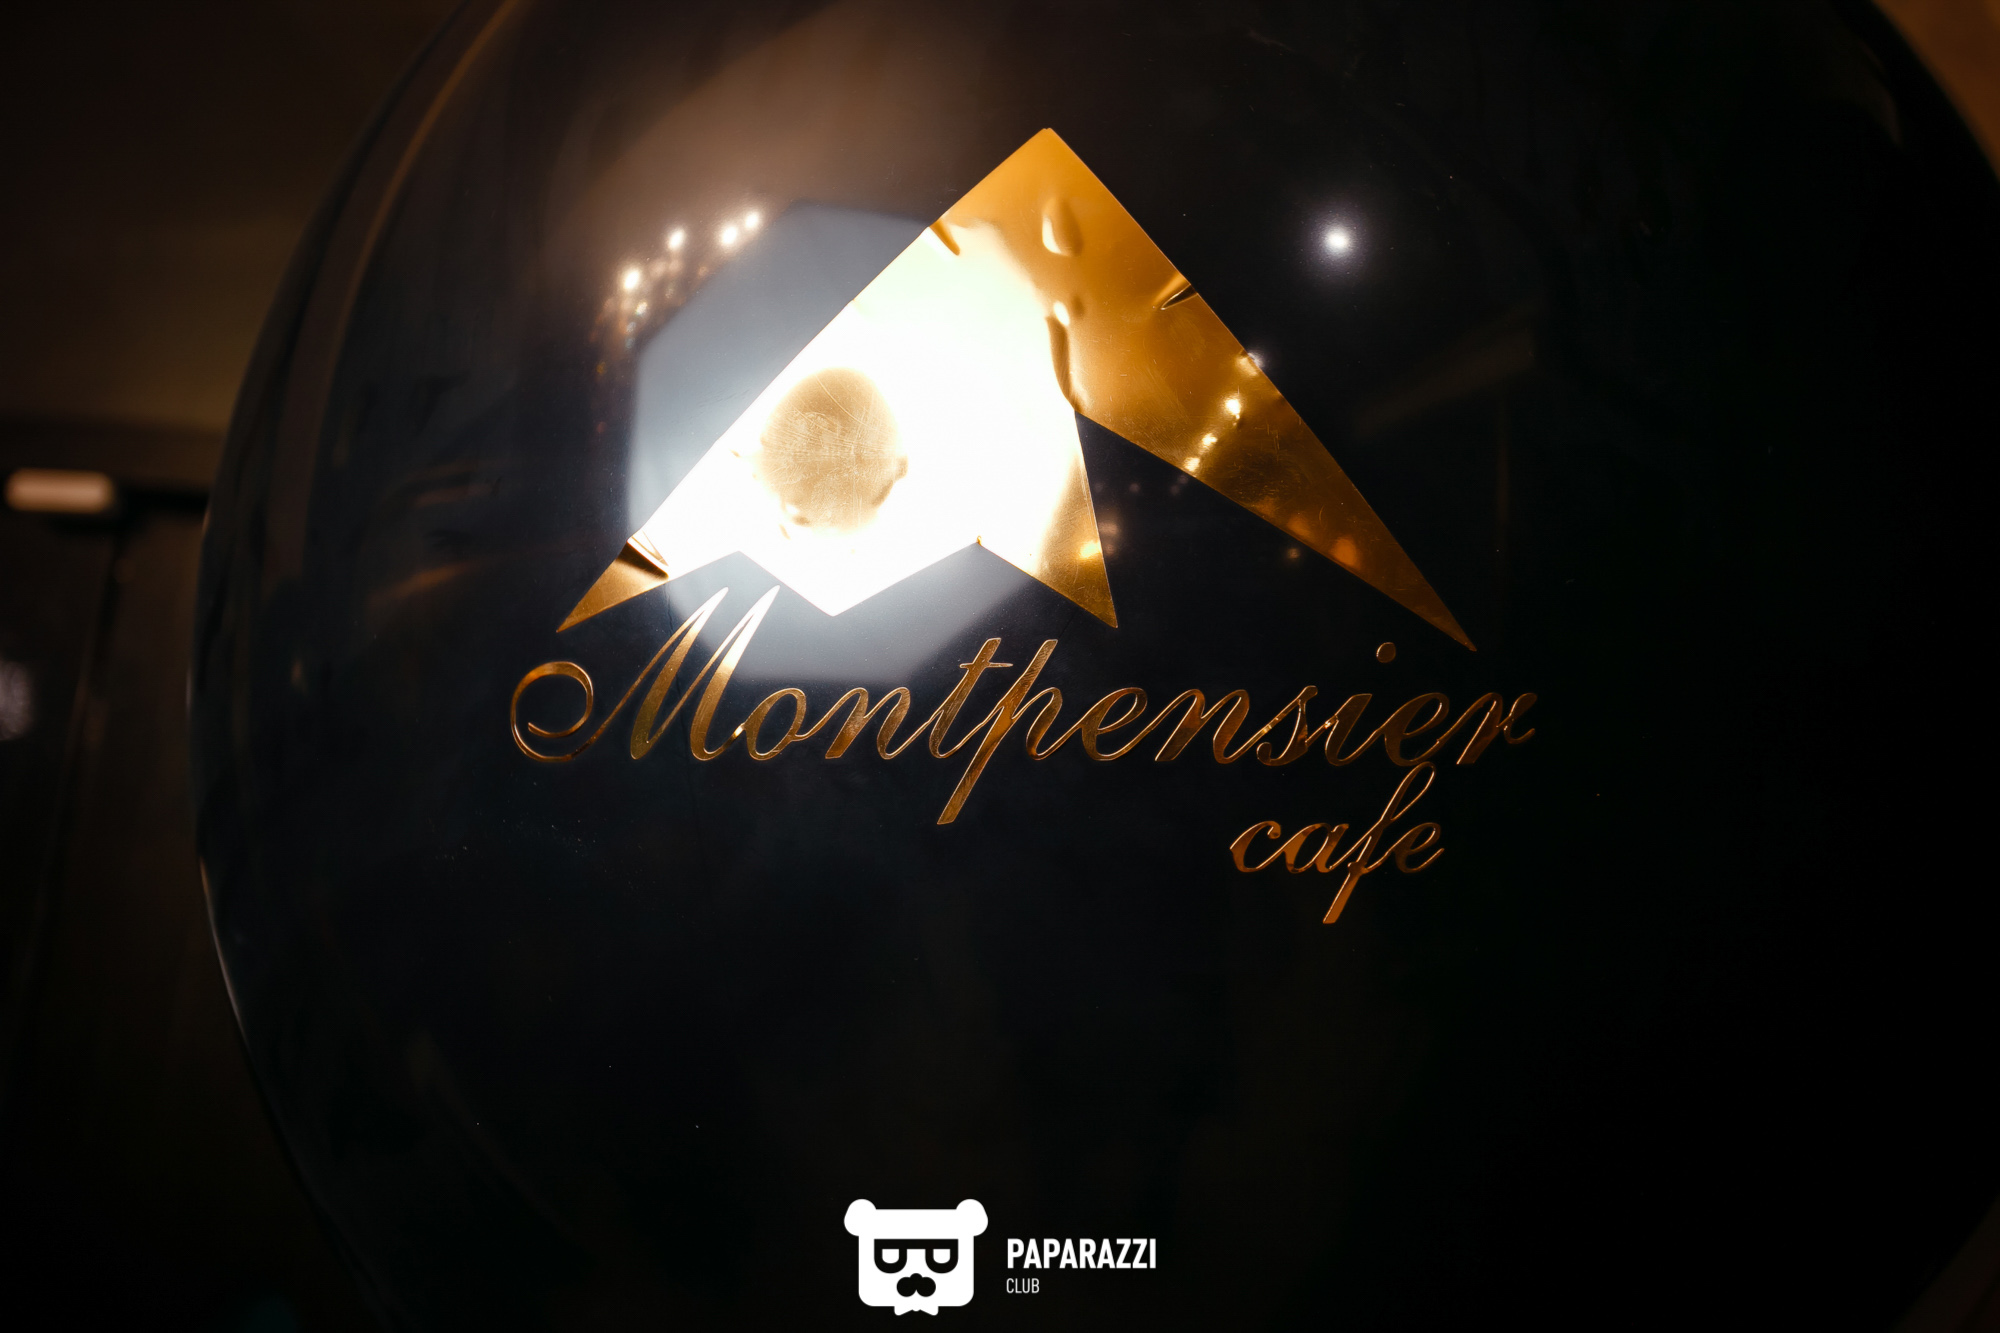 Montpensier coffee